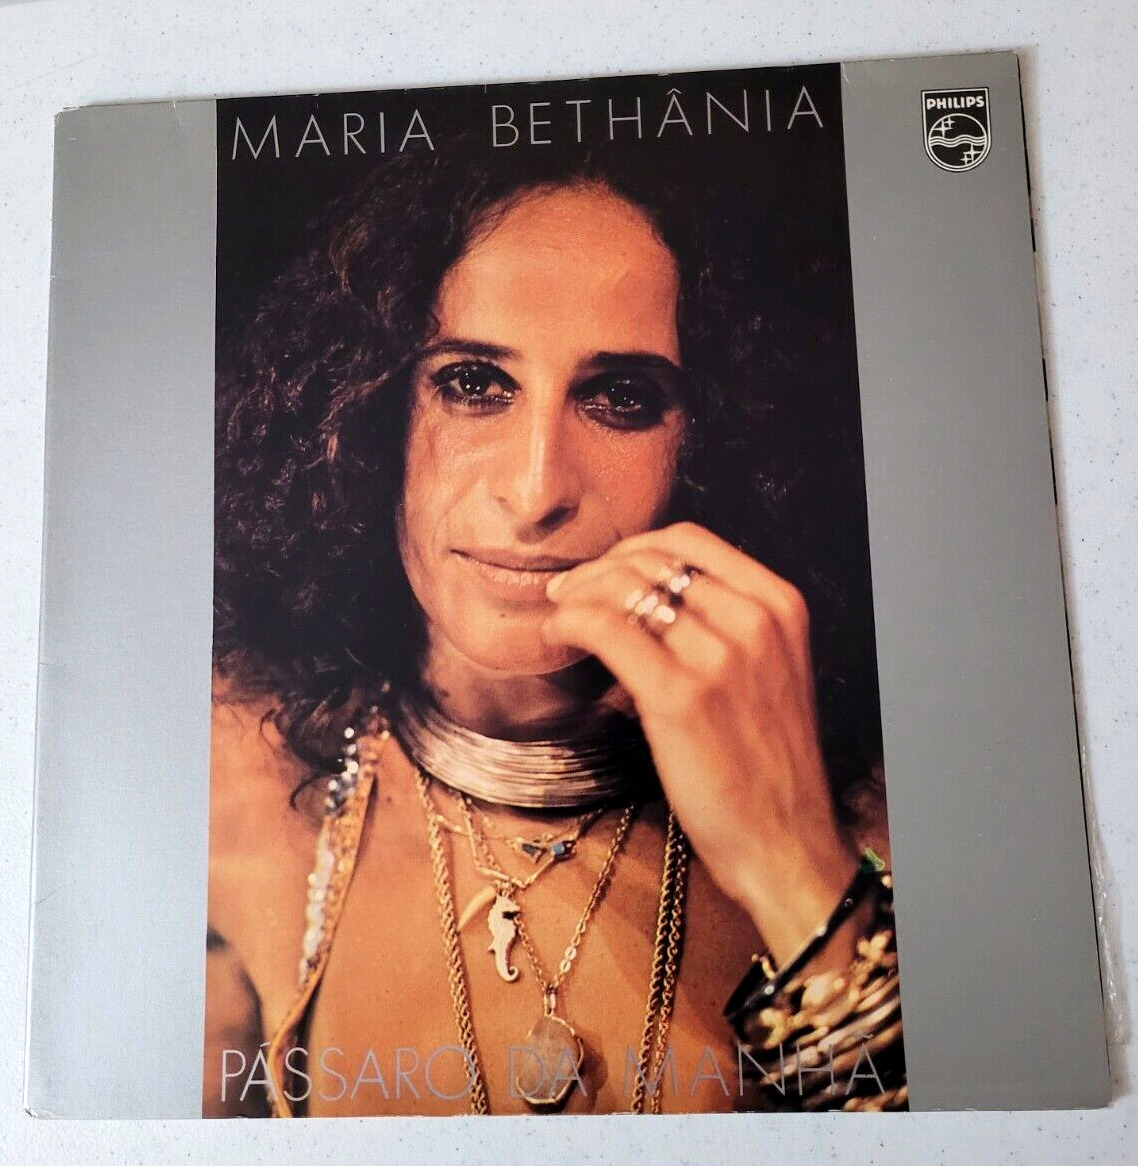 Maria Bethânia LP/ Pássaro Da Manhã (EX). Brazilian Import.Gatefold. 1977 press.